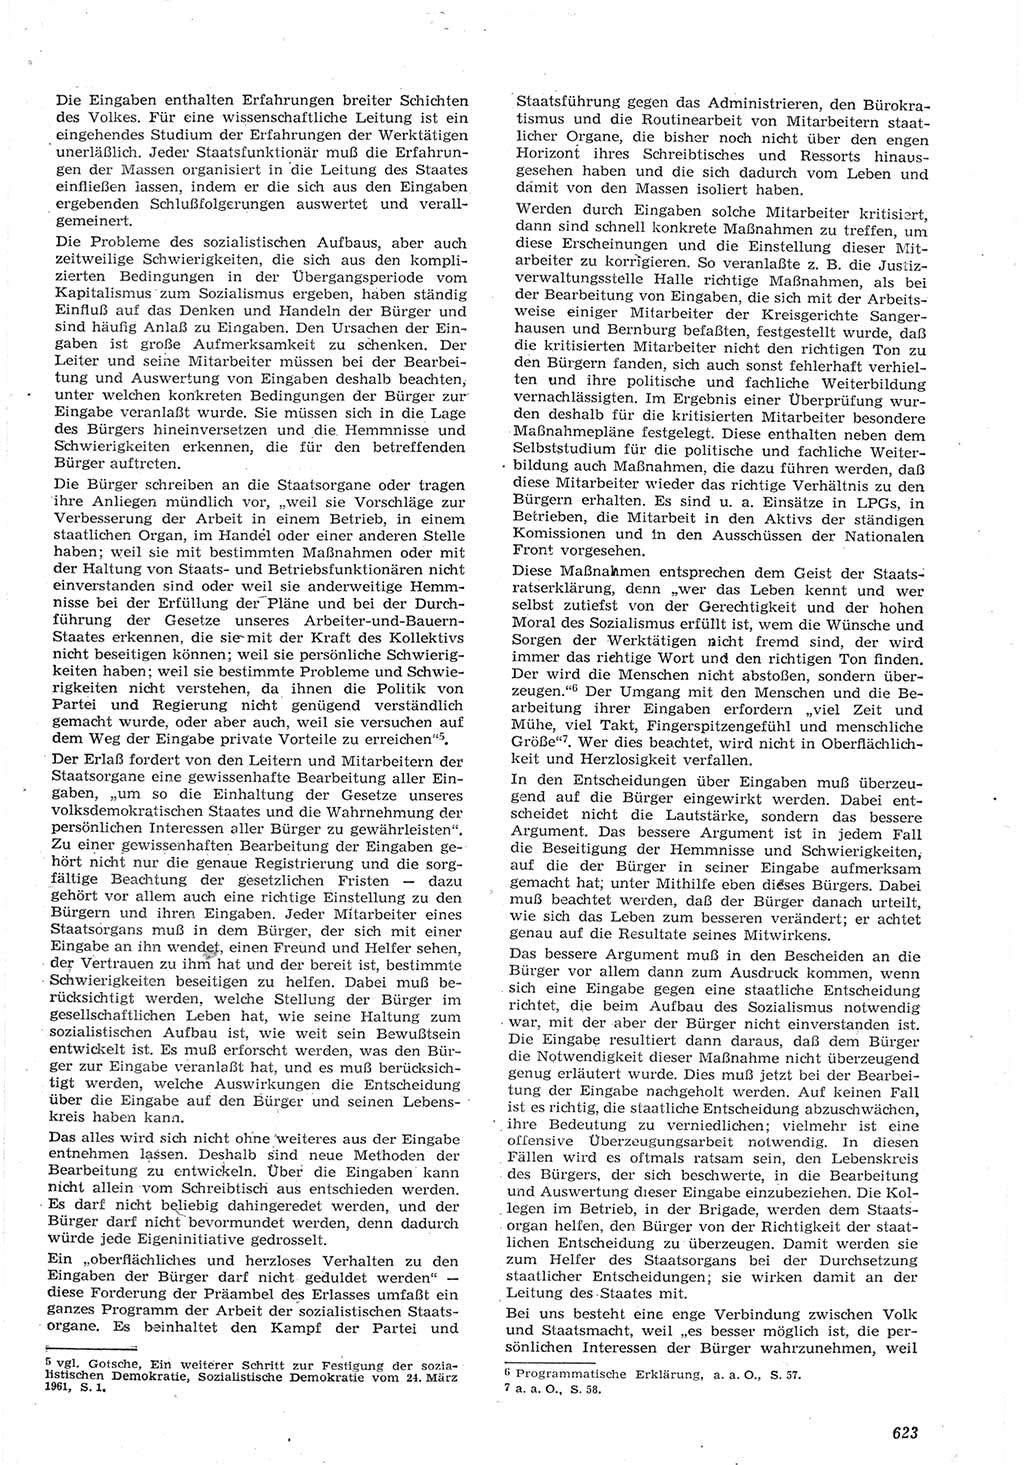 Neue Justiz (NJ), Zeitschrift für Recht und Rechtswissenschaft [Deutsche Demokratische Republik (DDR)], 15. Jahrgang 1961, Seite 623 (NJ DDR 1961, S. 623)